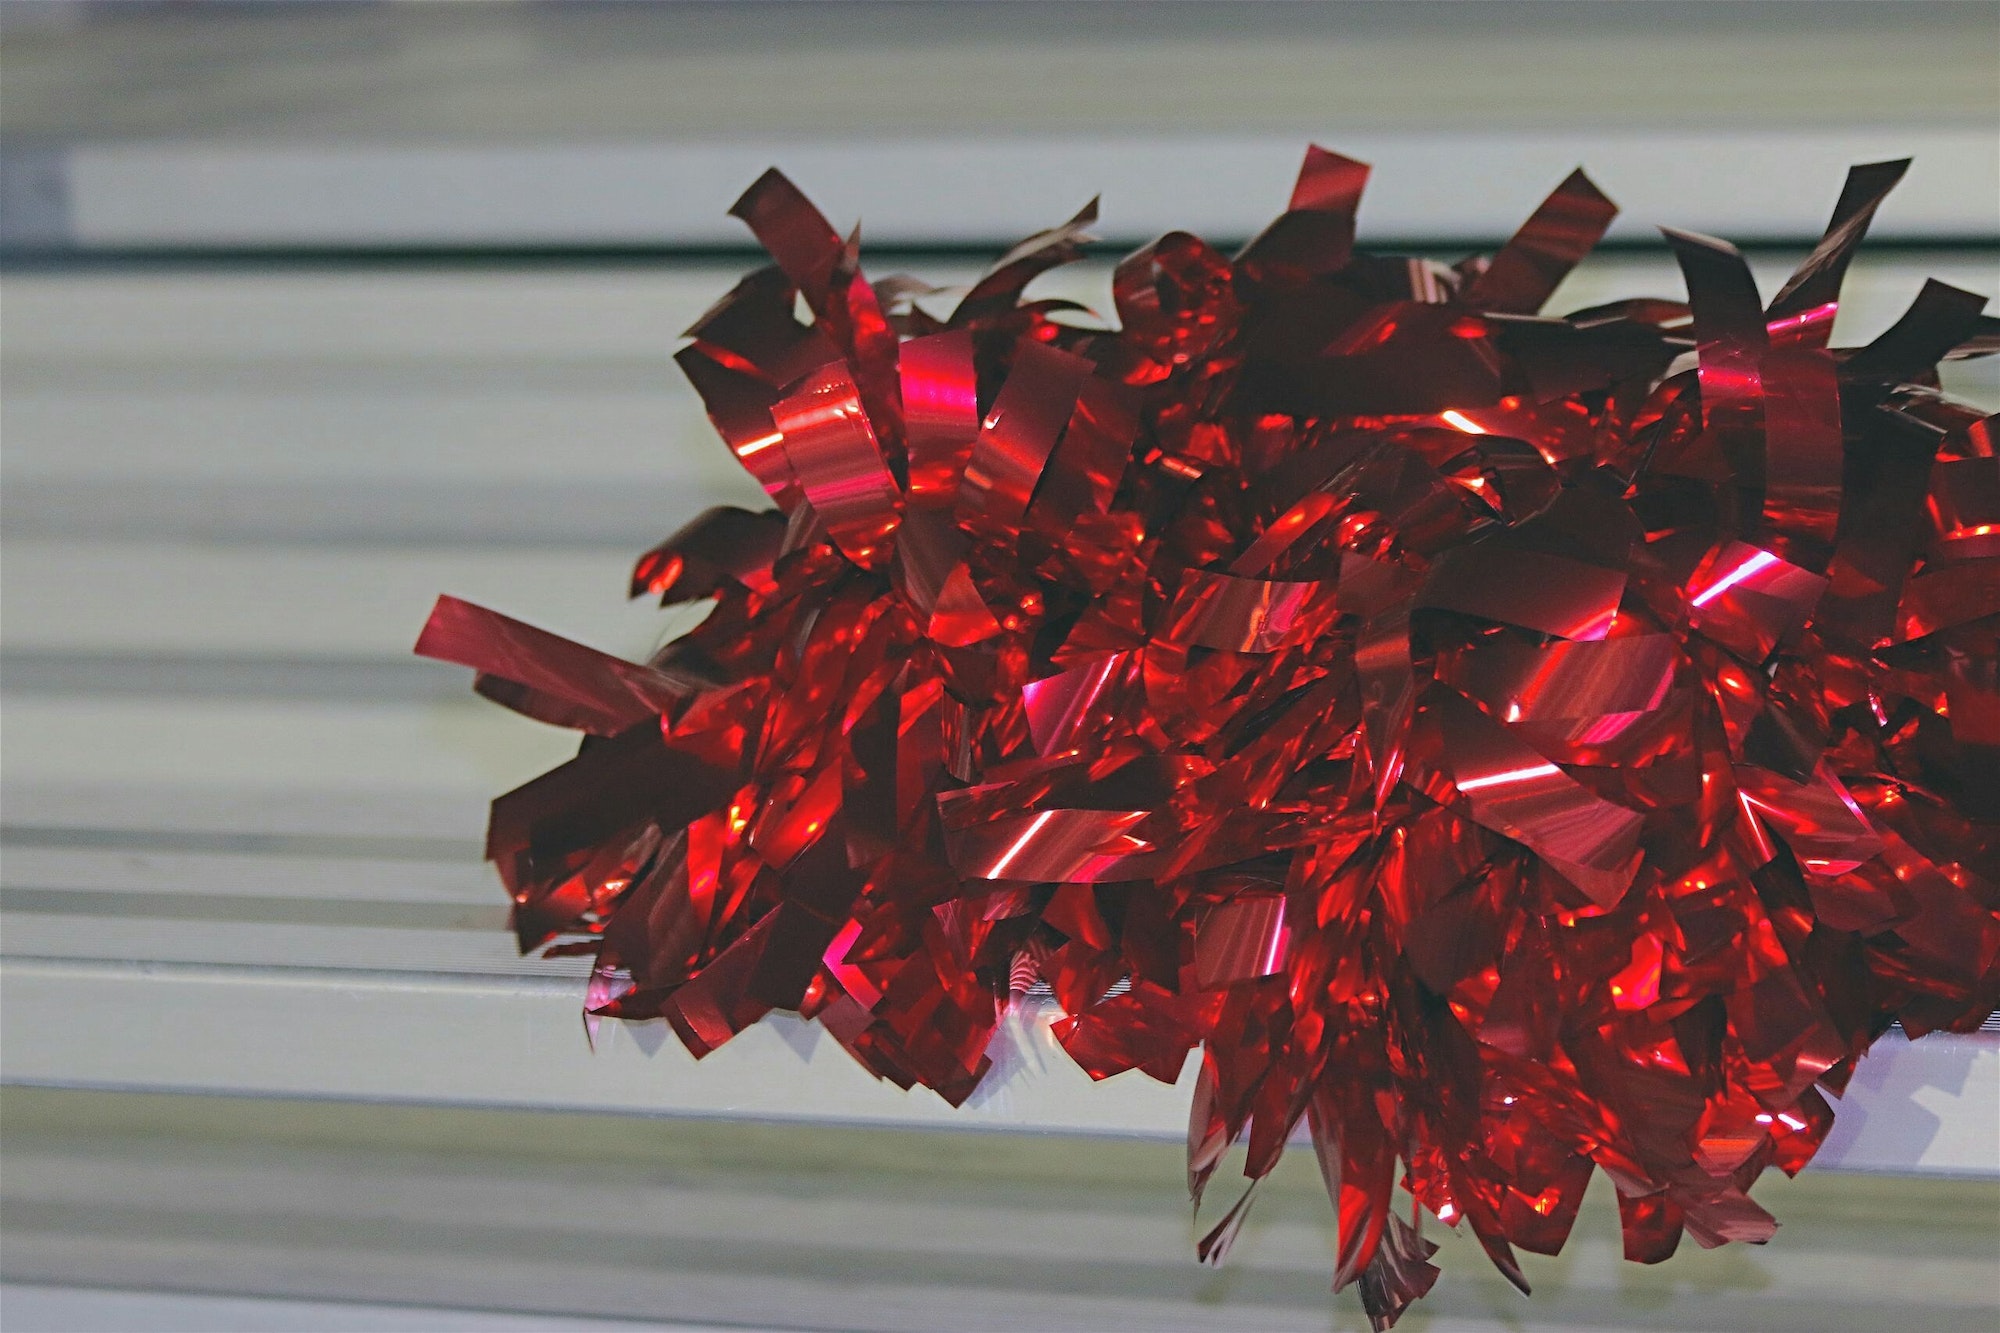 Minimalist image of bright red metallic cheerleading pom pom on football stadium seat.